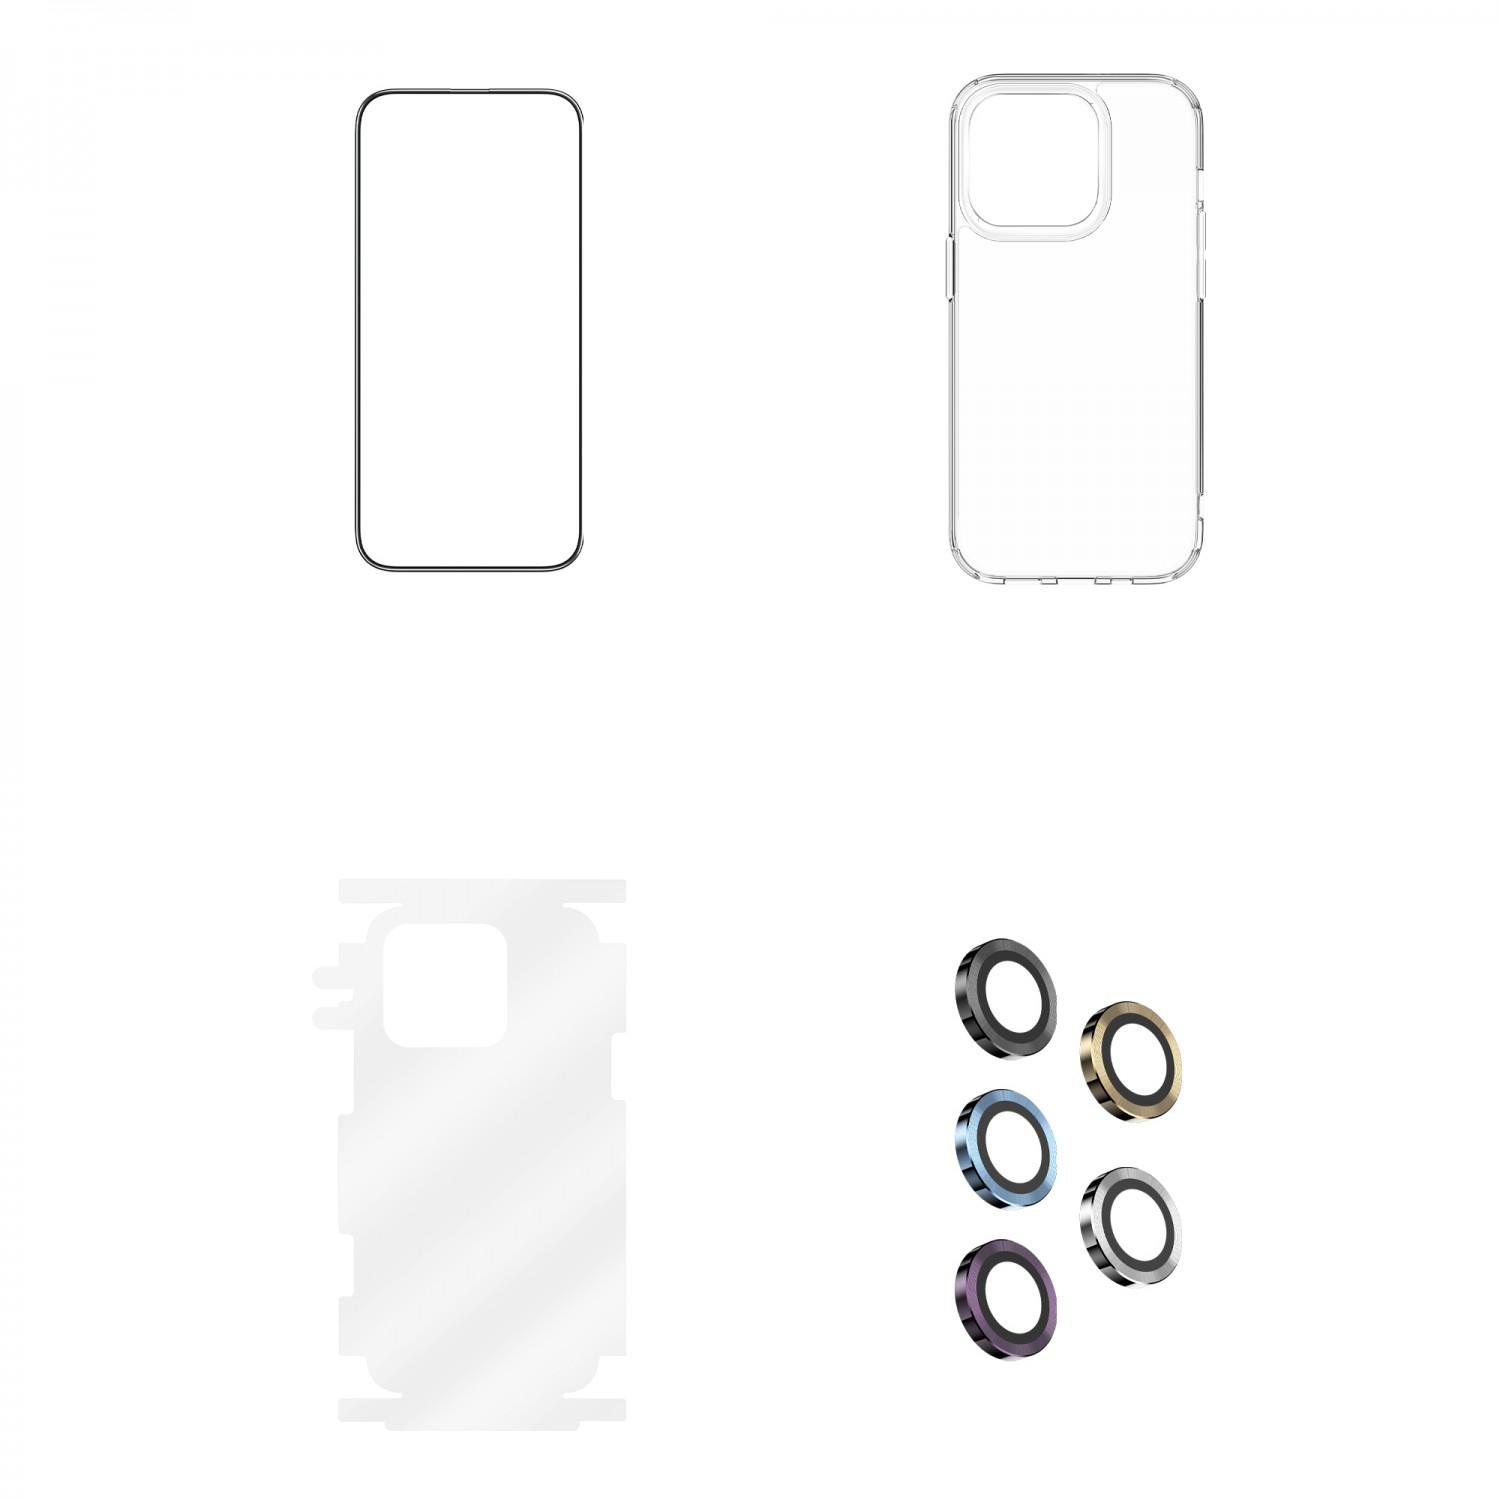 بكج حماية ايفون 14 برو ماكس أسود جرين Green 4 in 1 360° HD Protection Pack for iPhone 14 Pro Max Black - cG9zdDoxMzc3MzYw